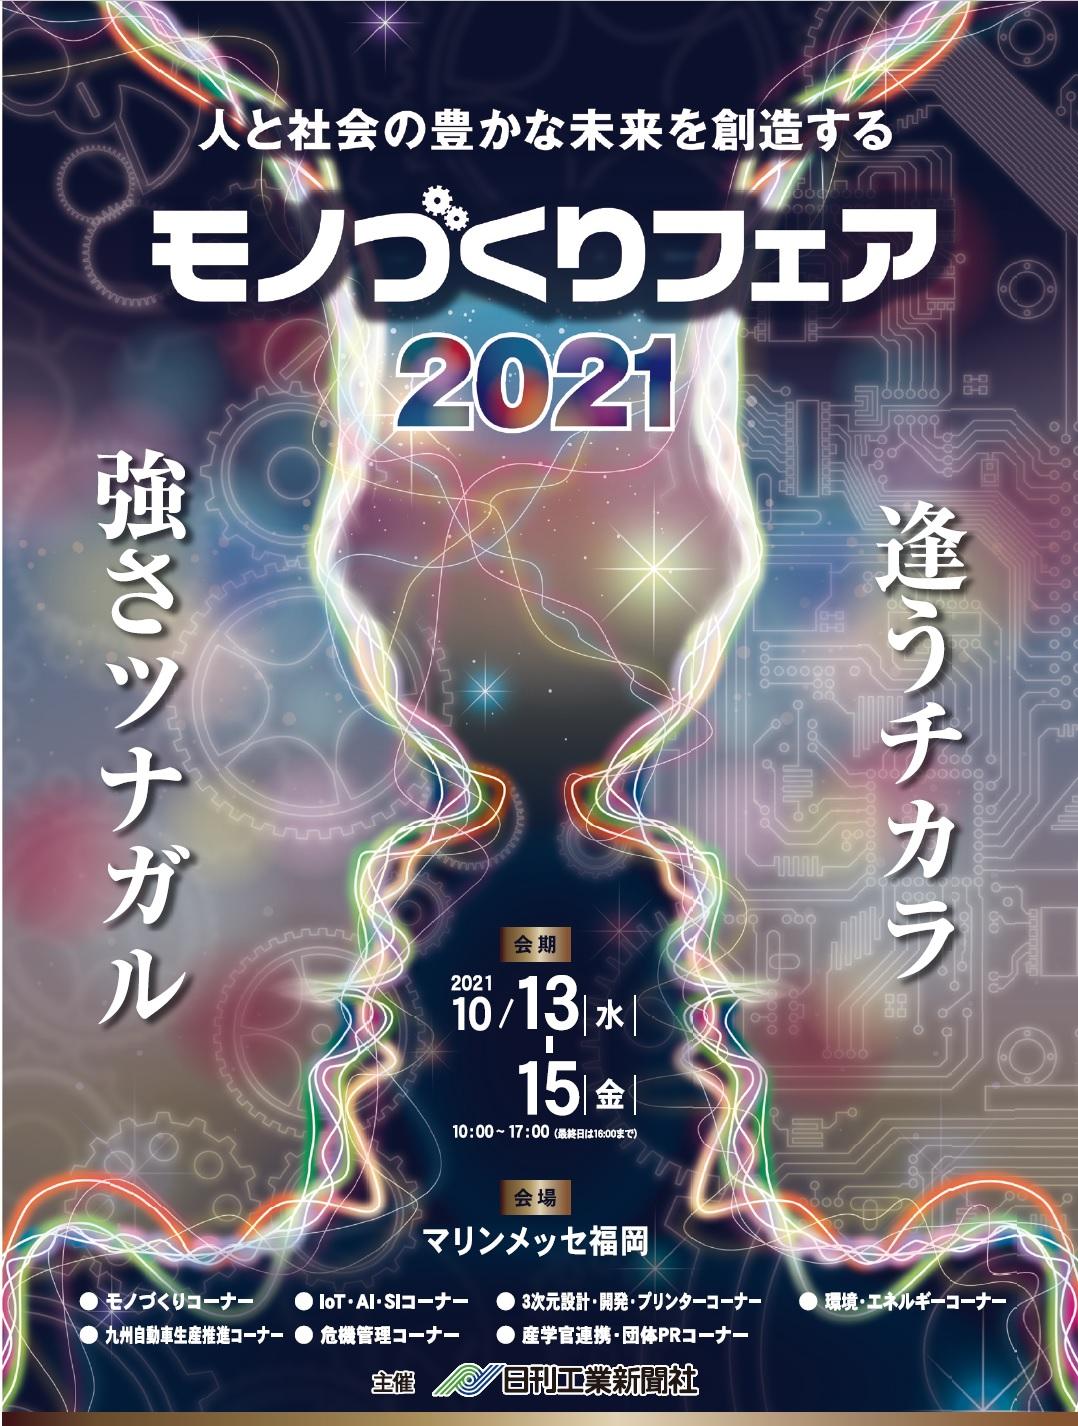 日刊工業新聞社主催 モノづくりフェア2021 出展のお知らせ